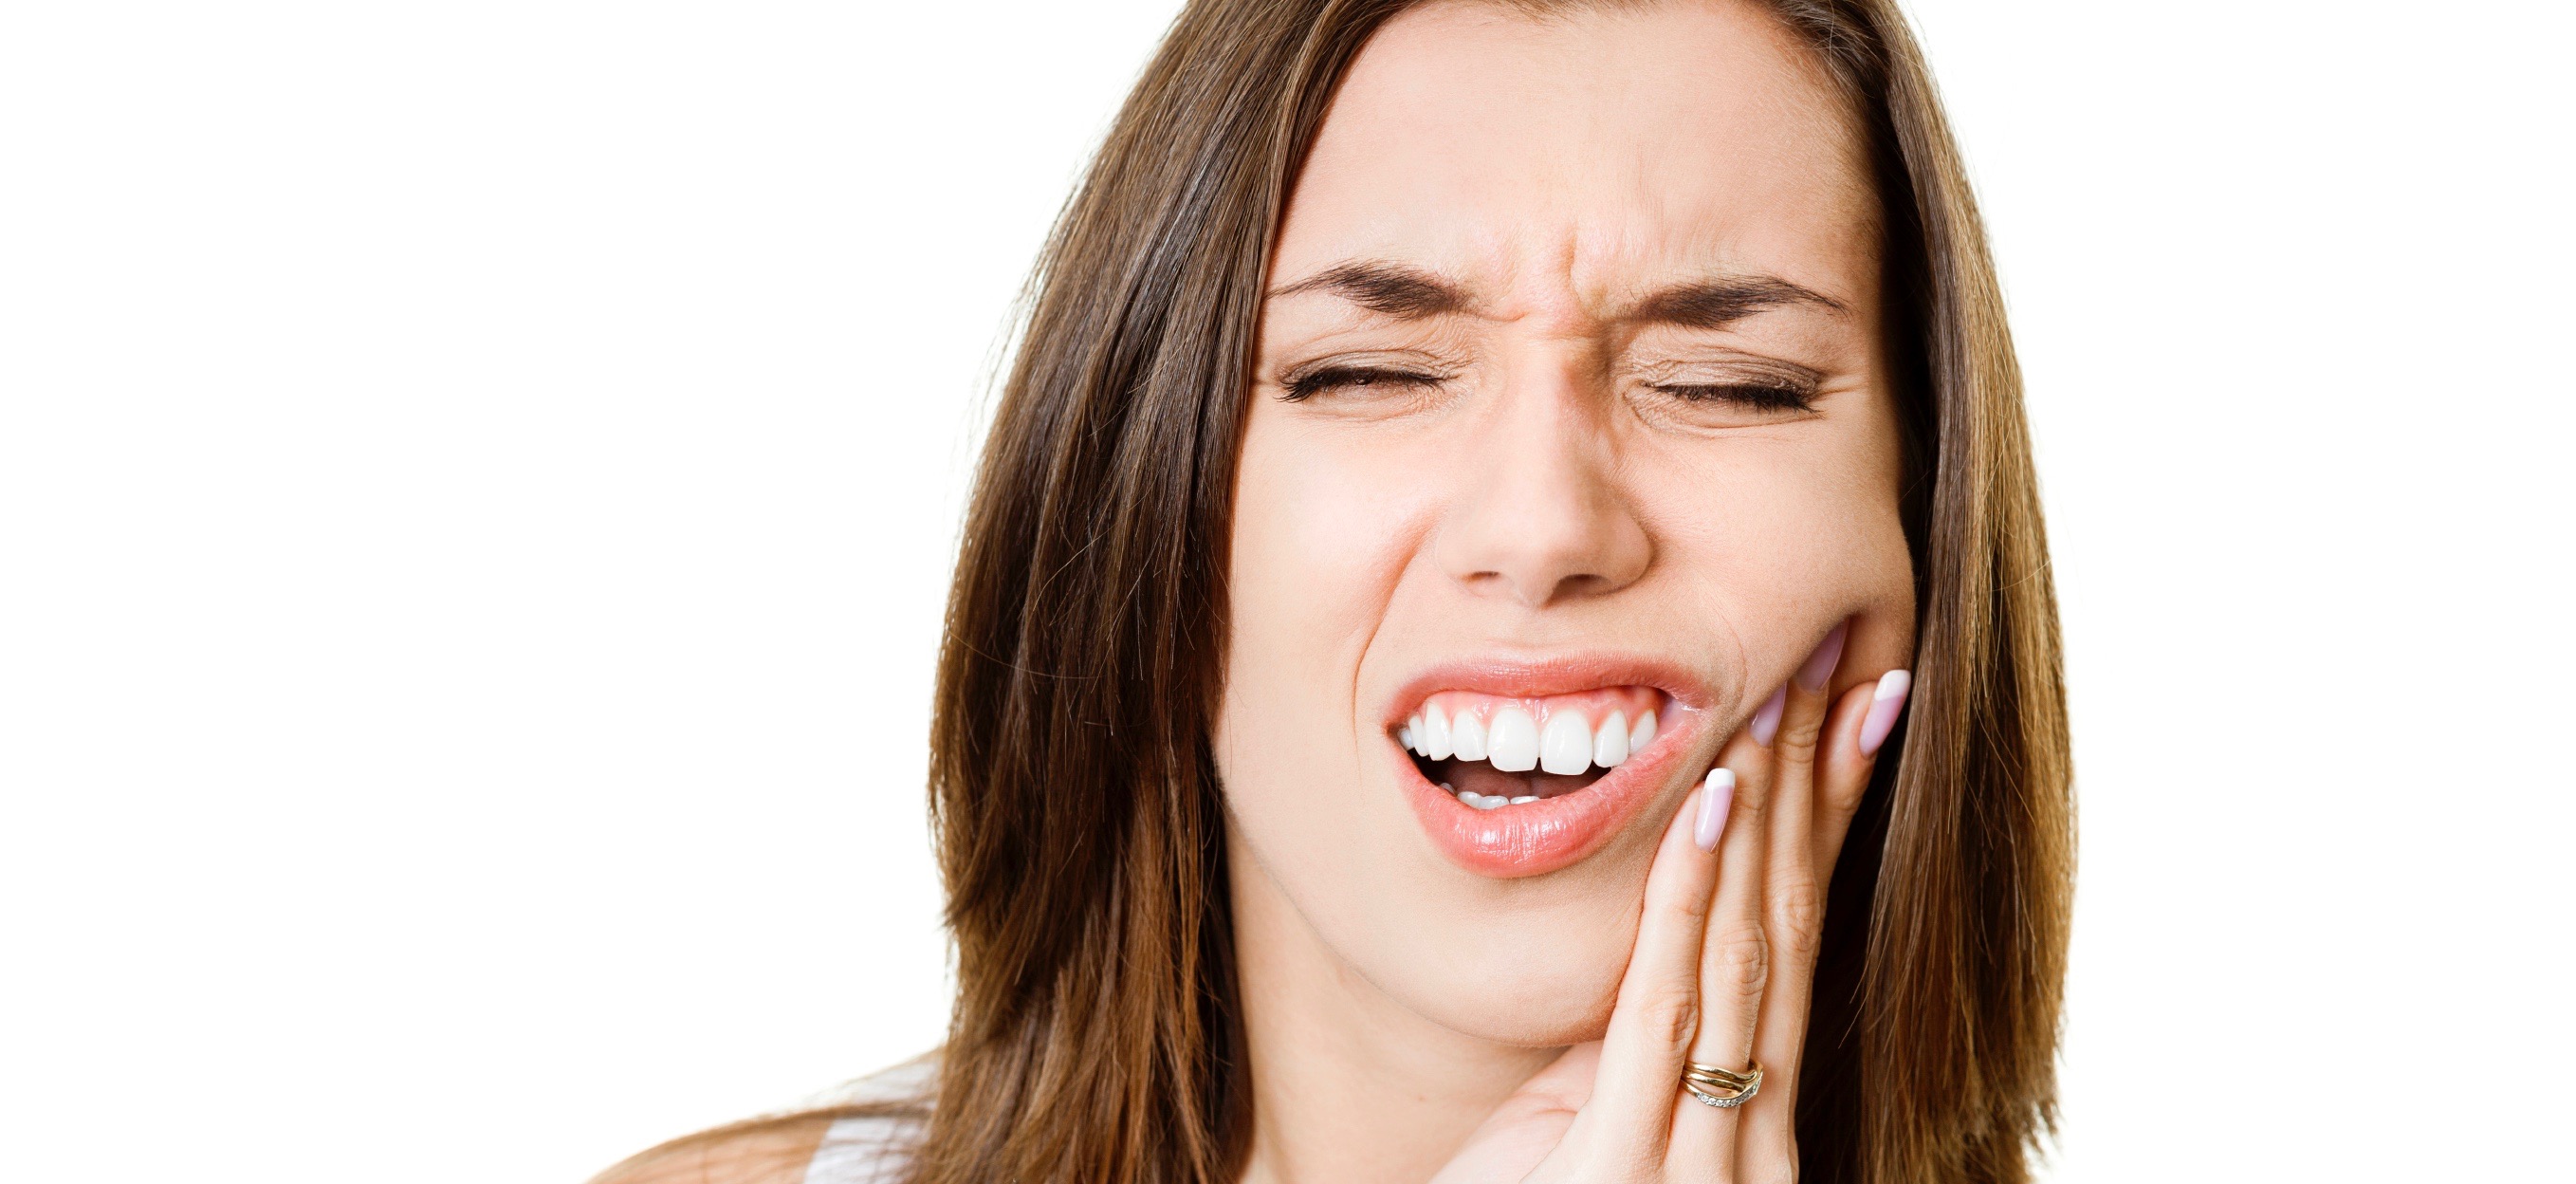 Szybko rozpoczęta walka z nadwrażliwością zębów może zakończyć się sukcesem.